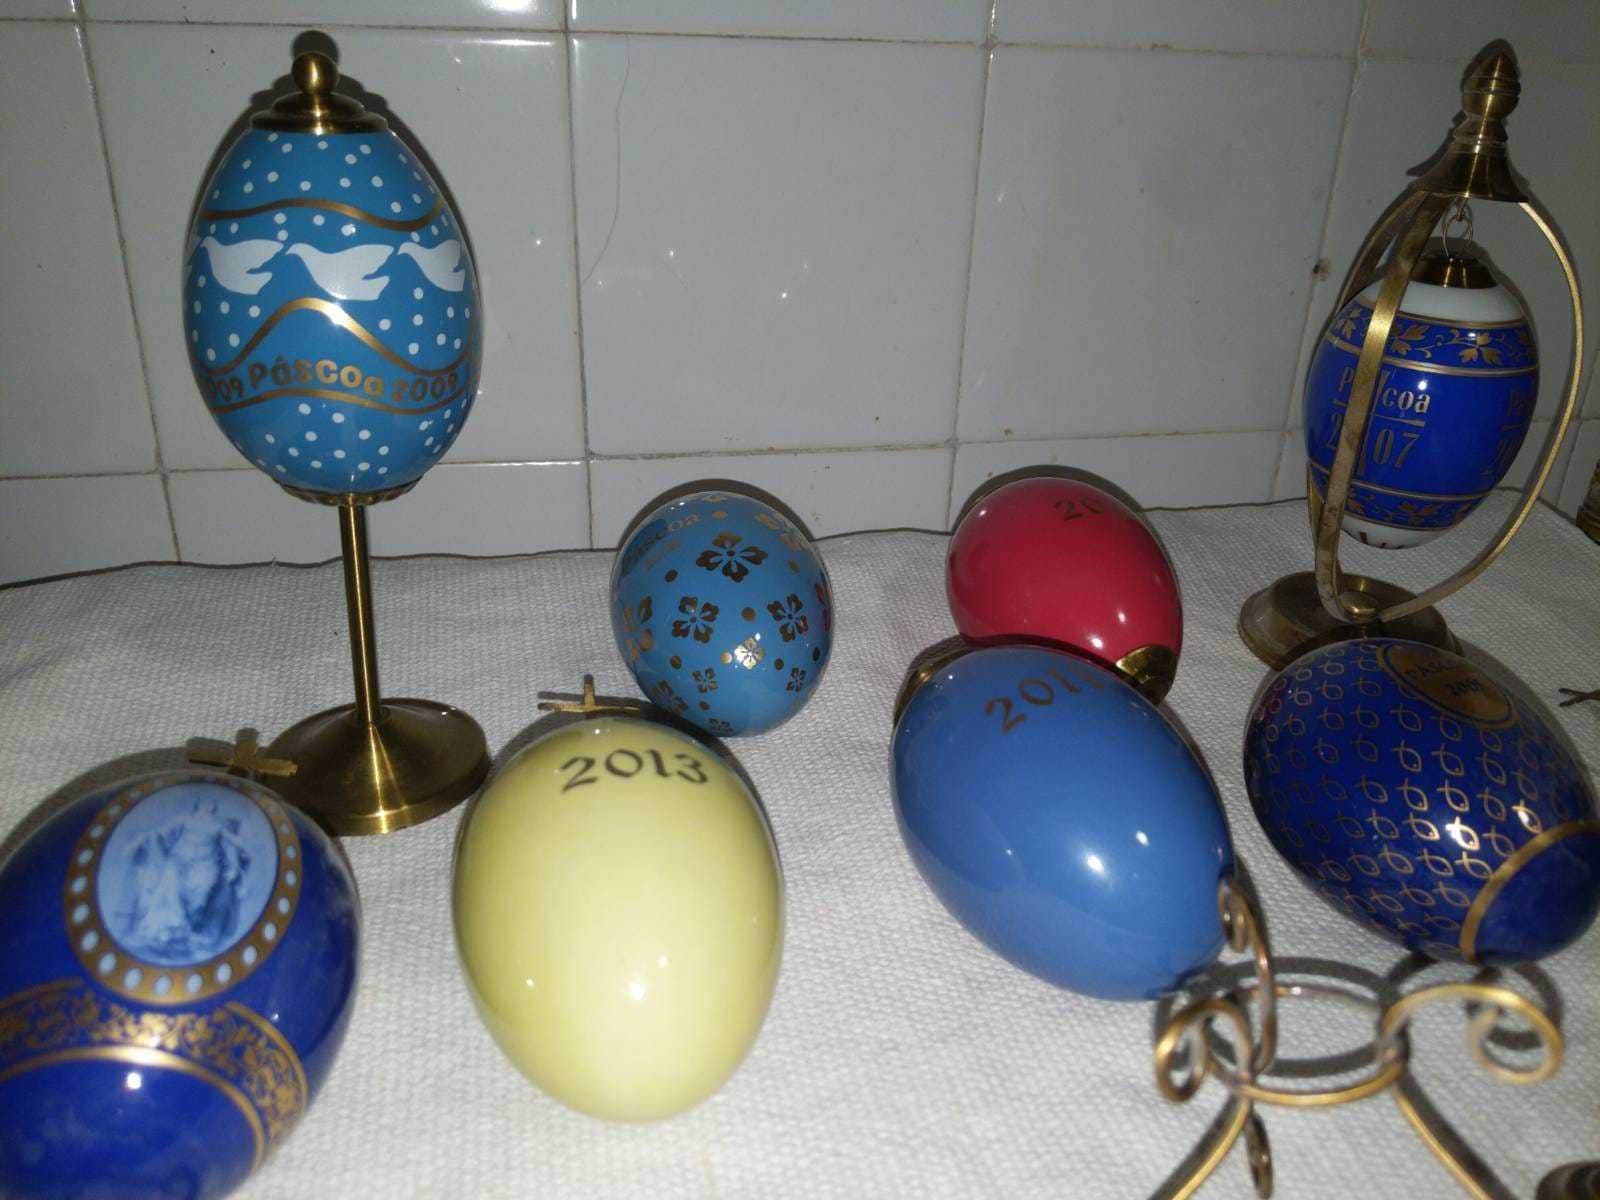 Ovos da Pascoa, Coleção Philae (replica Fabergé)